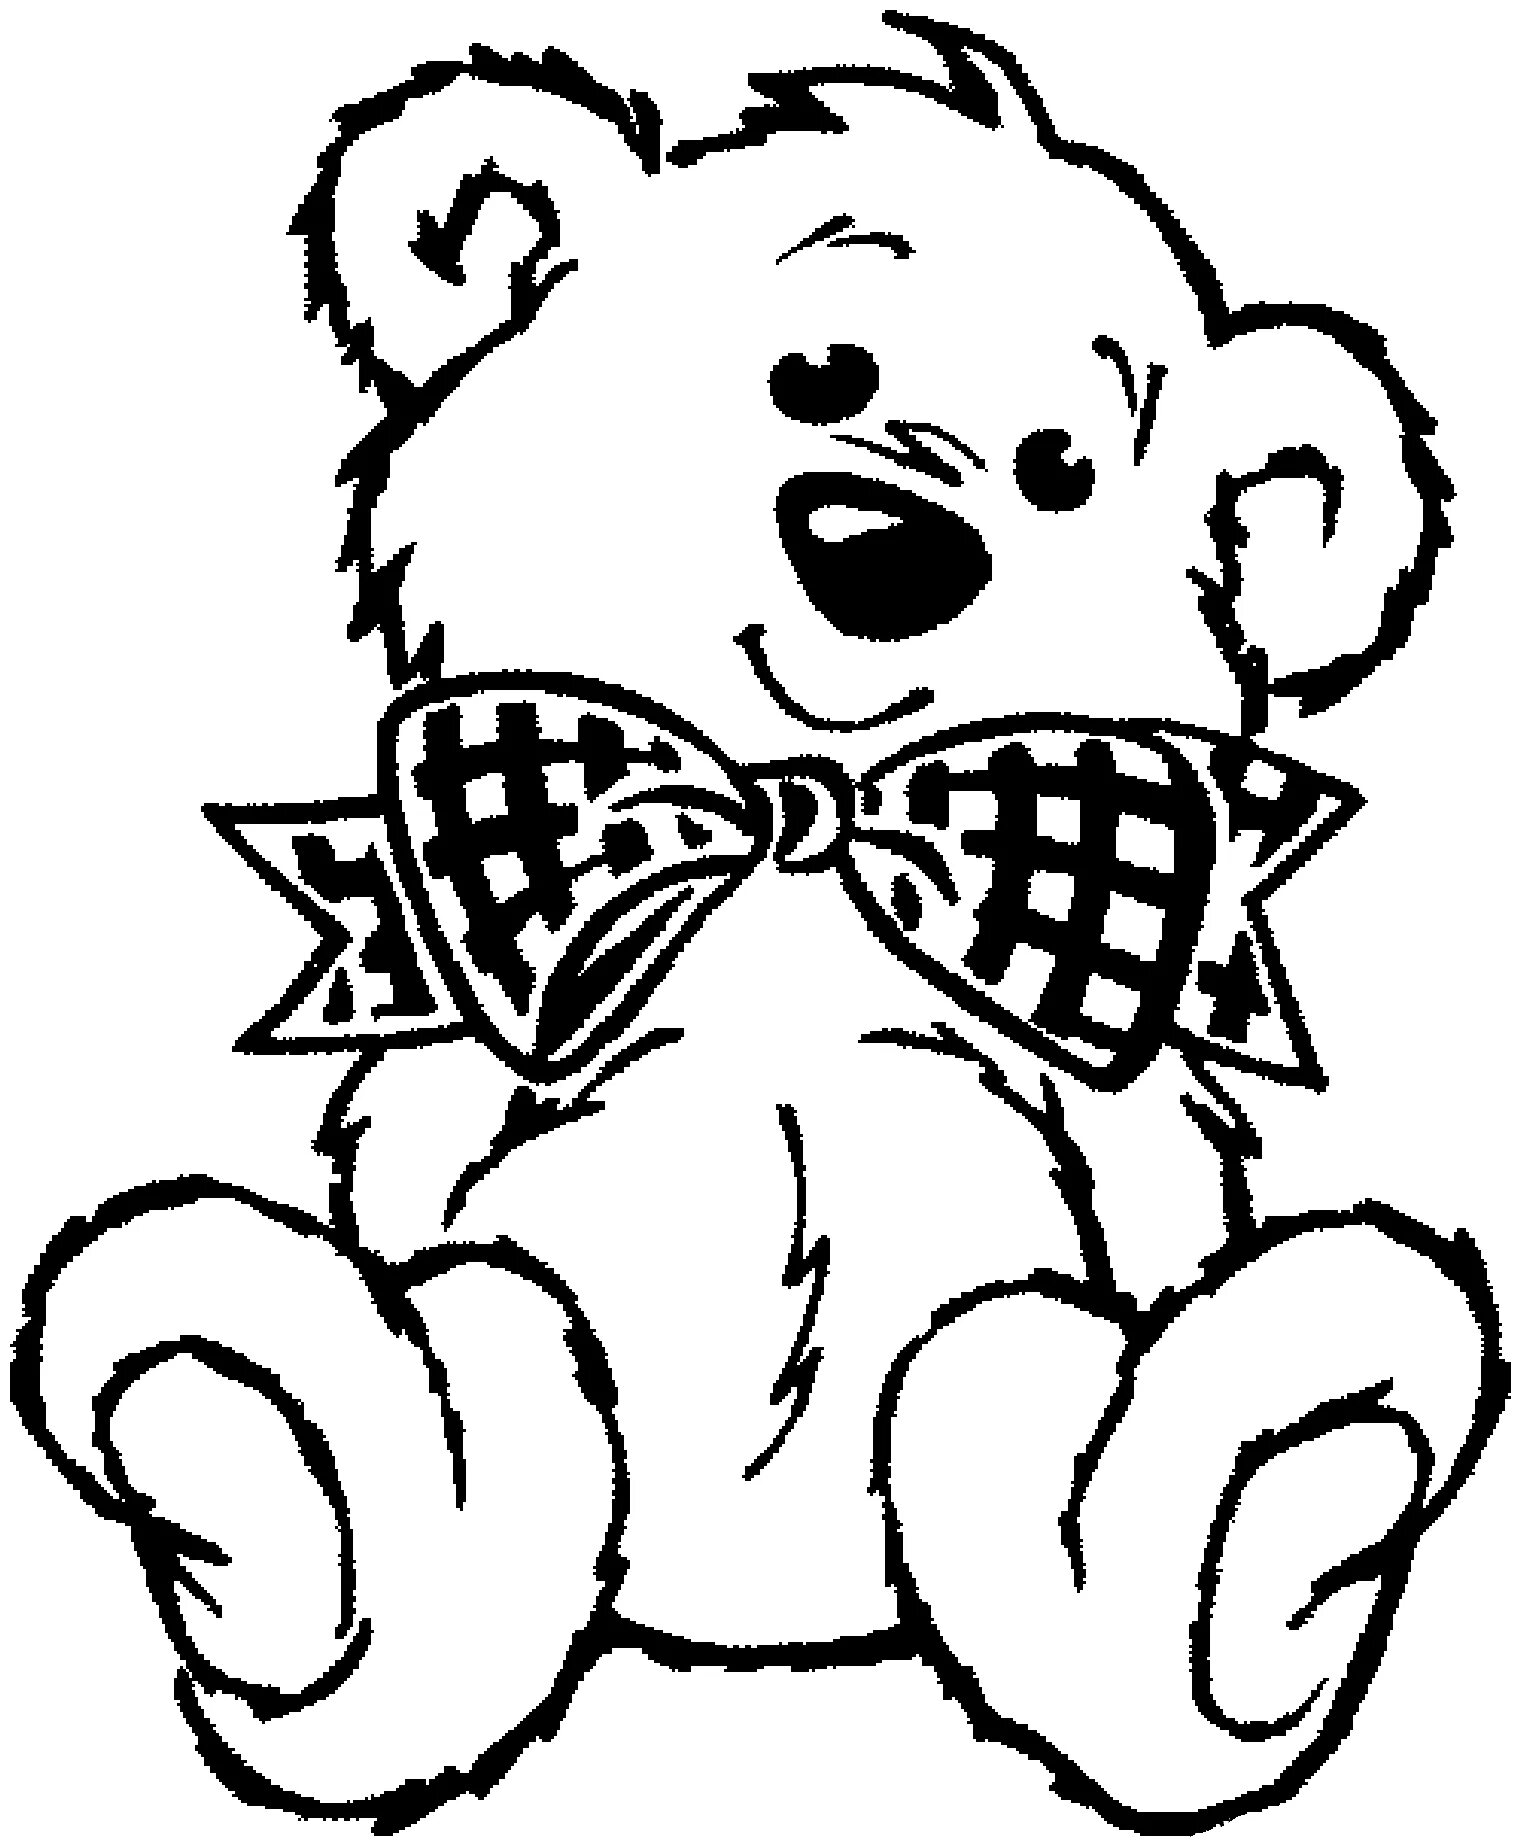 Teddy bear #2